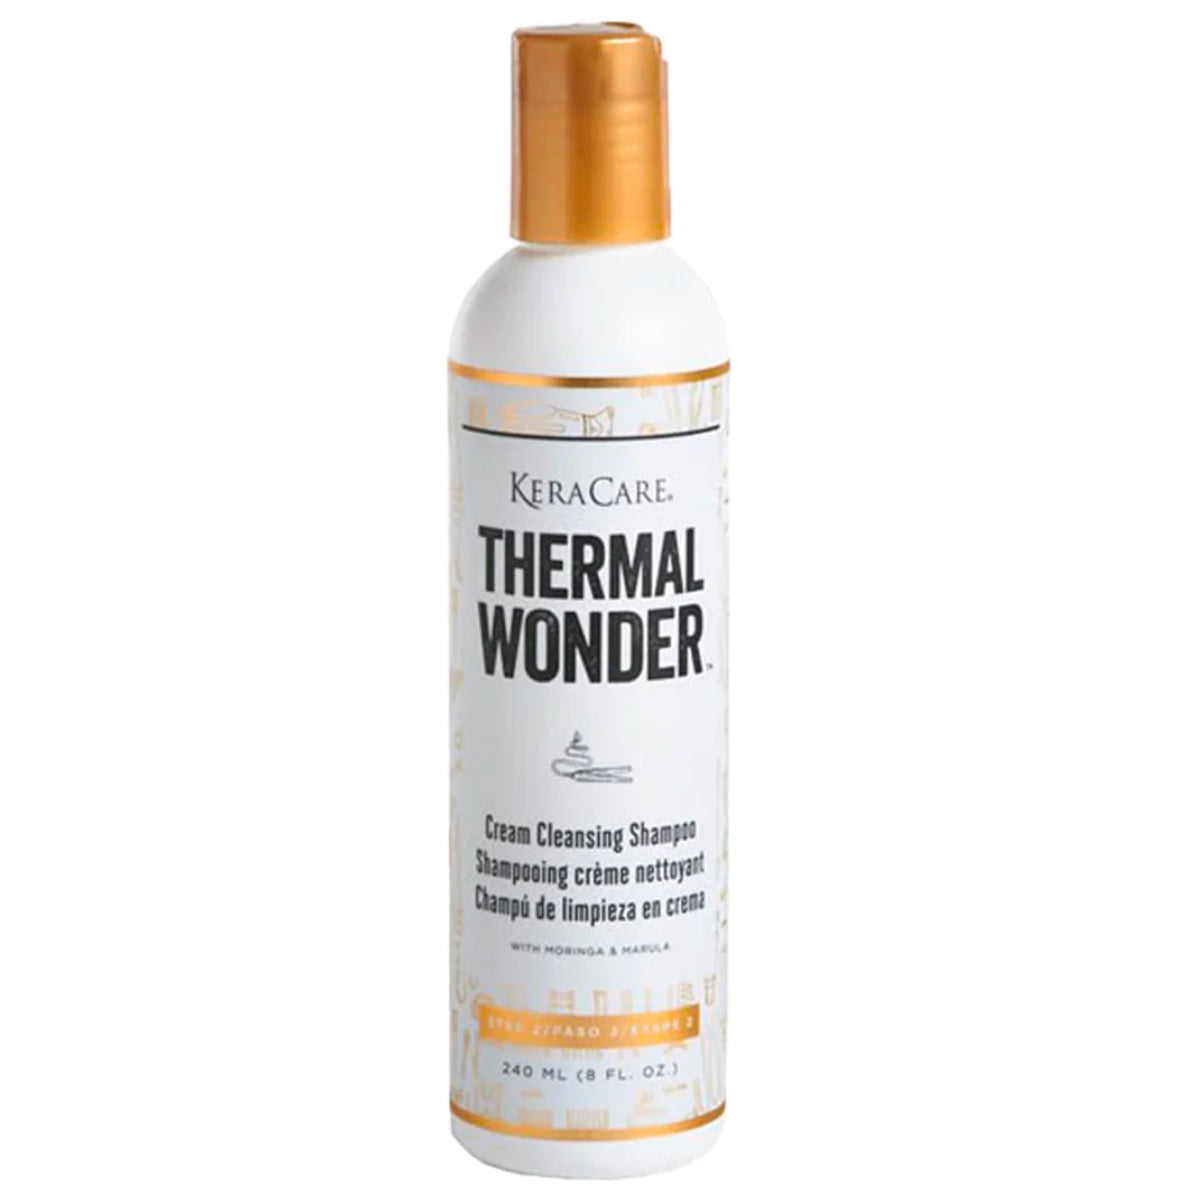 Le Cream Cleansing Shampoo de Keracare Thermal Wonder est un shampooing doux qui élimine tous les résidus et saletés sans assécher vos cheveux !